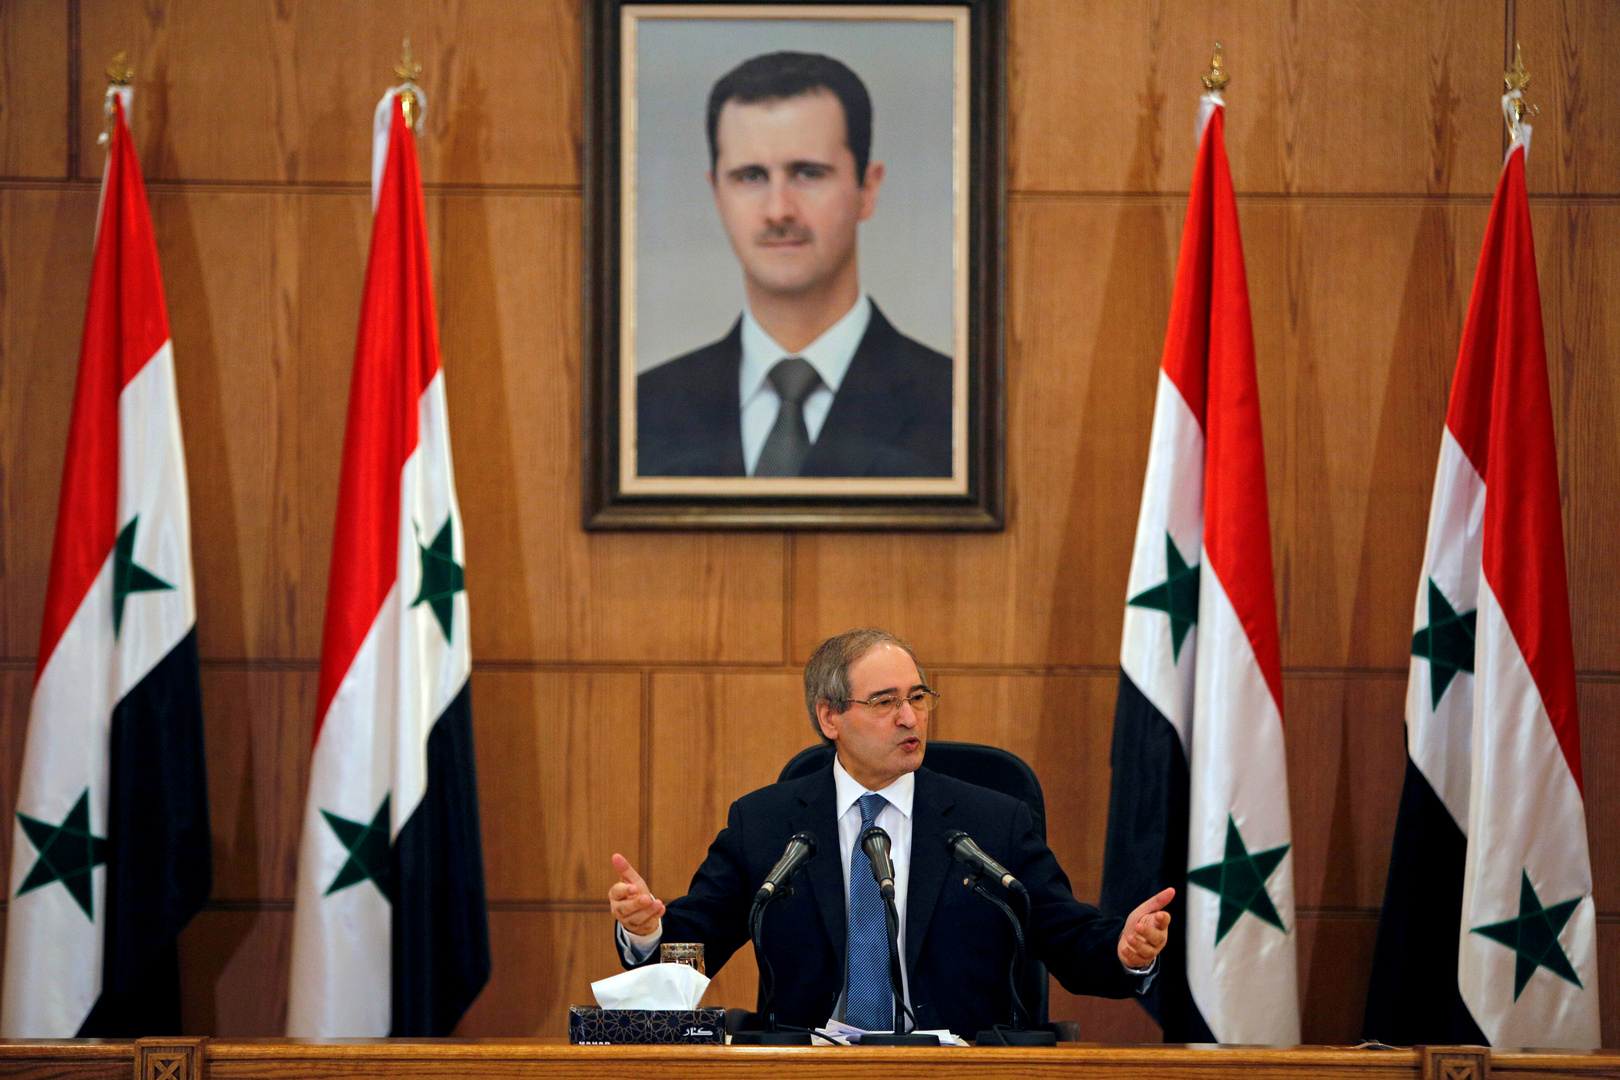 موسكو تعلق على اختيار وزير خارجية سوريا الجديد إيران كوجهة لأول زيارة خارجية له